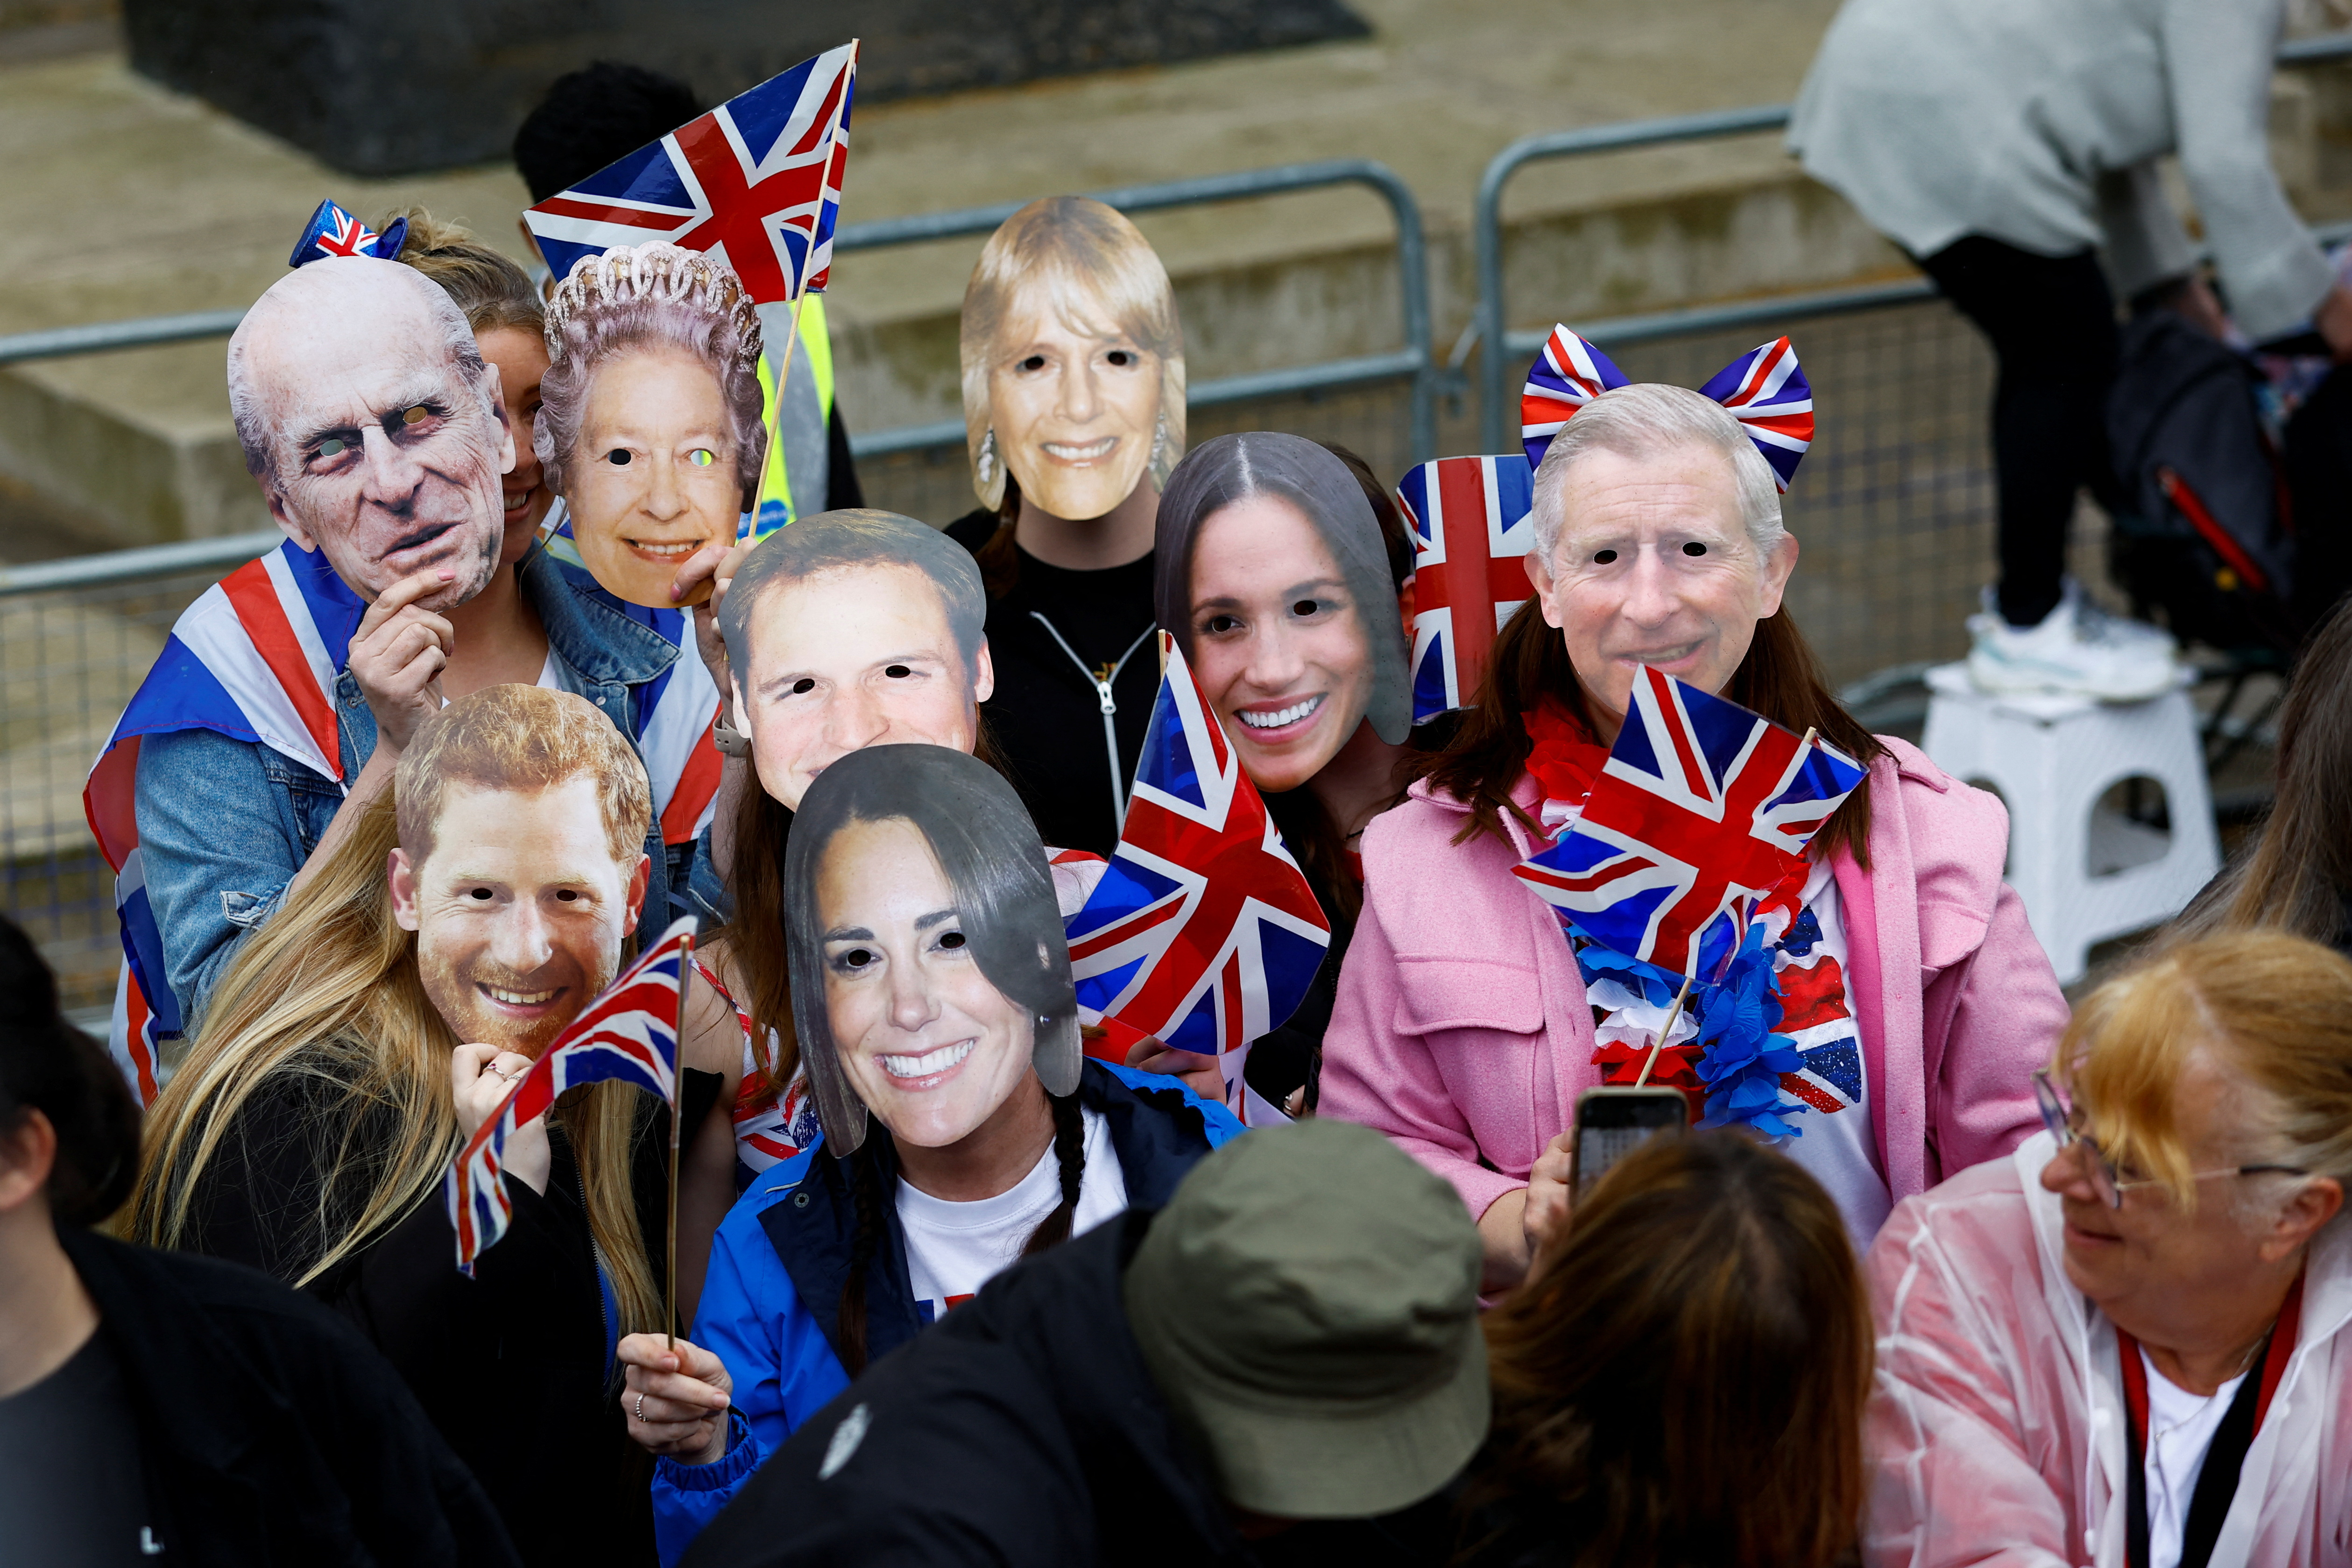 Personas con máscaras que representan a miembros de la familia real británica esperan para ver la procesión del rey Carlos y la reina Camilla de Gran Bretaña a su ceremonia de coronación del Palacio de Buckingham a la Abadía de Westminster, en Whitehall, en Londres, Gran Bretaña 6 de mayo 2023. REUTERS/Andrew Boyers